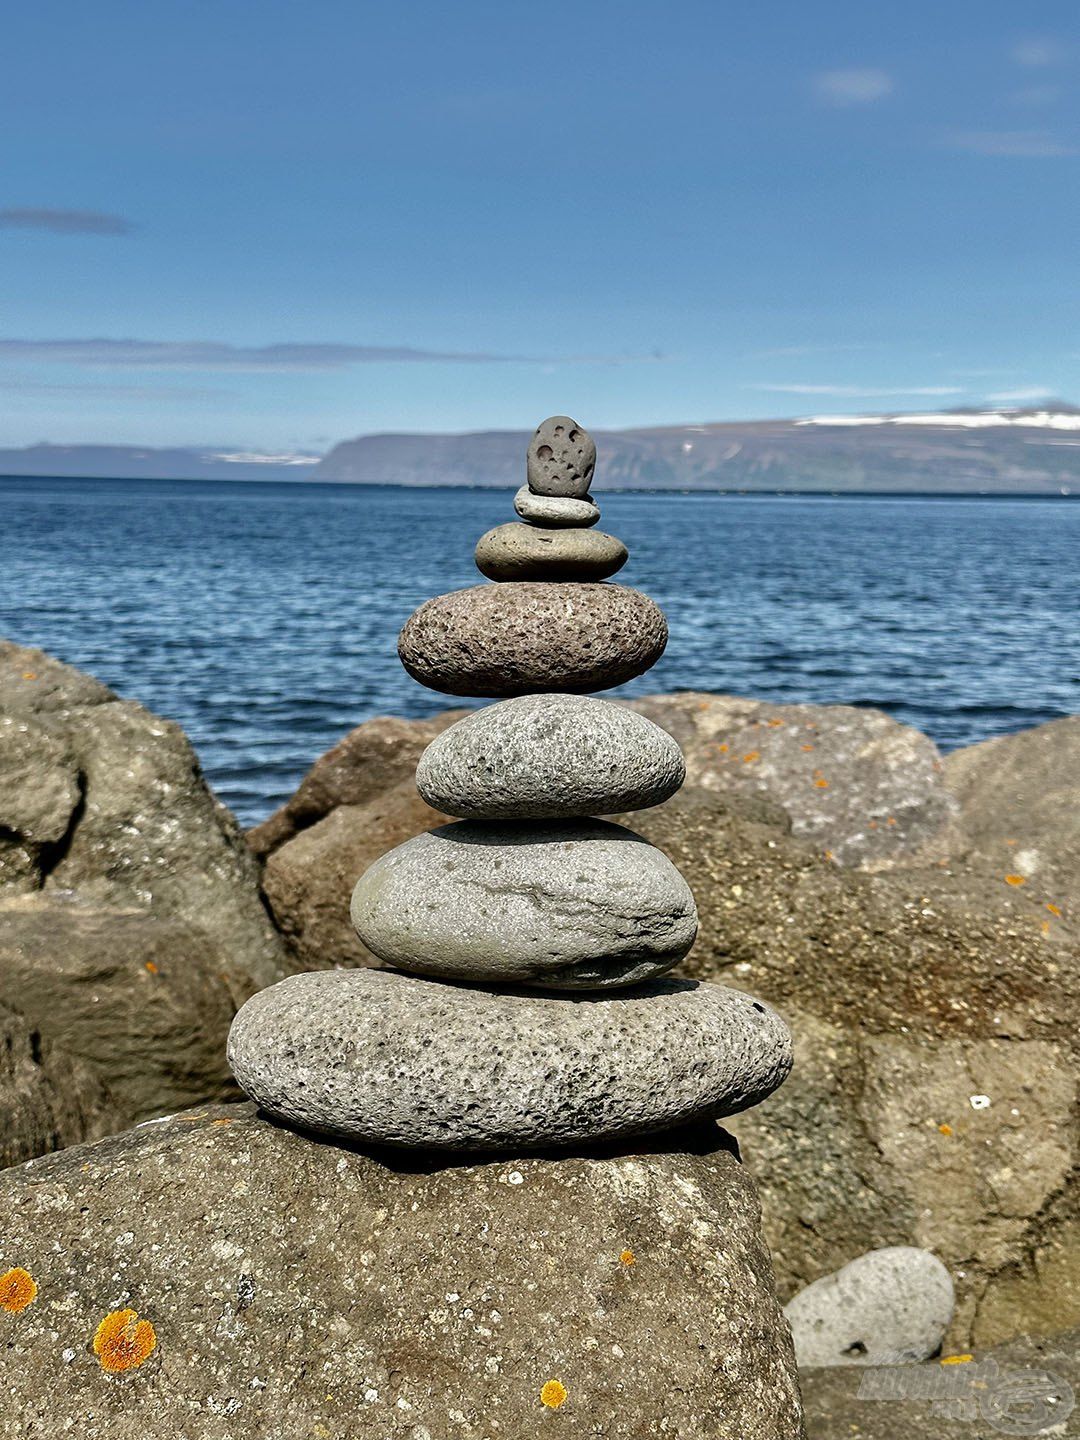 Izlandra tökéletesen jellemző rideg kép: kő és tenger